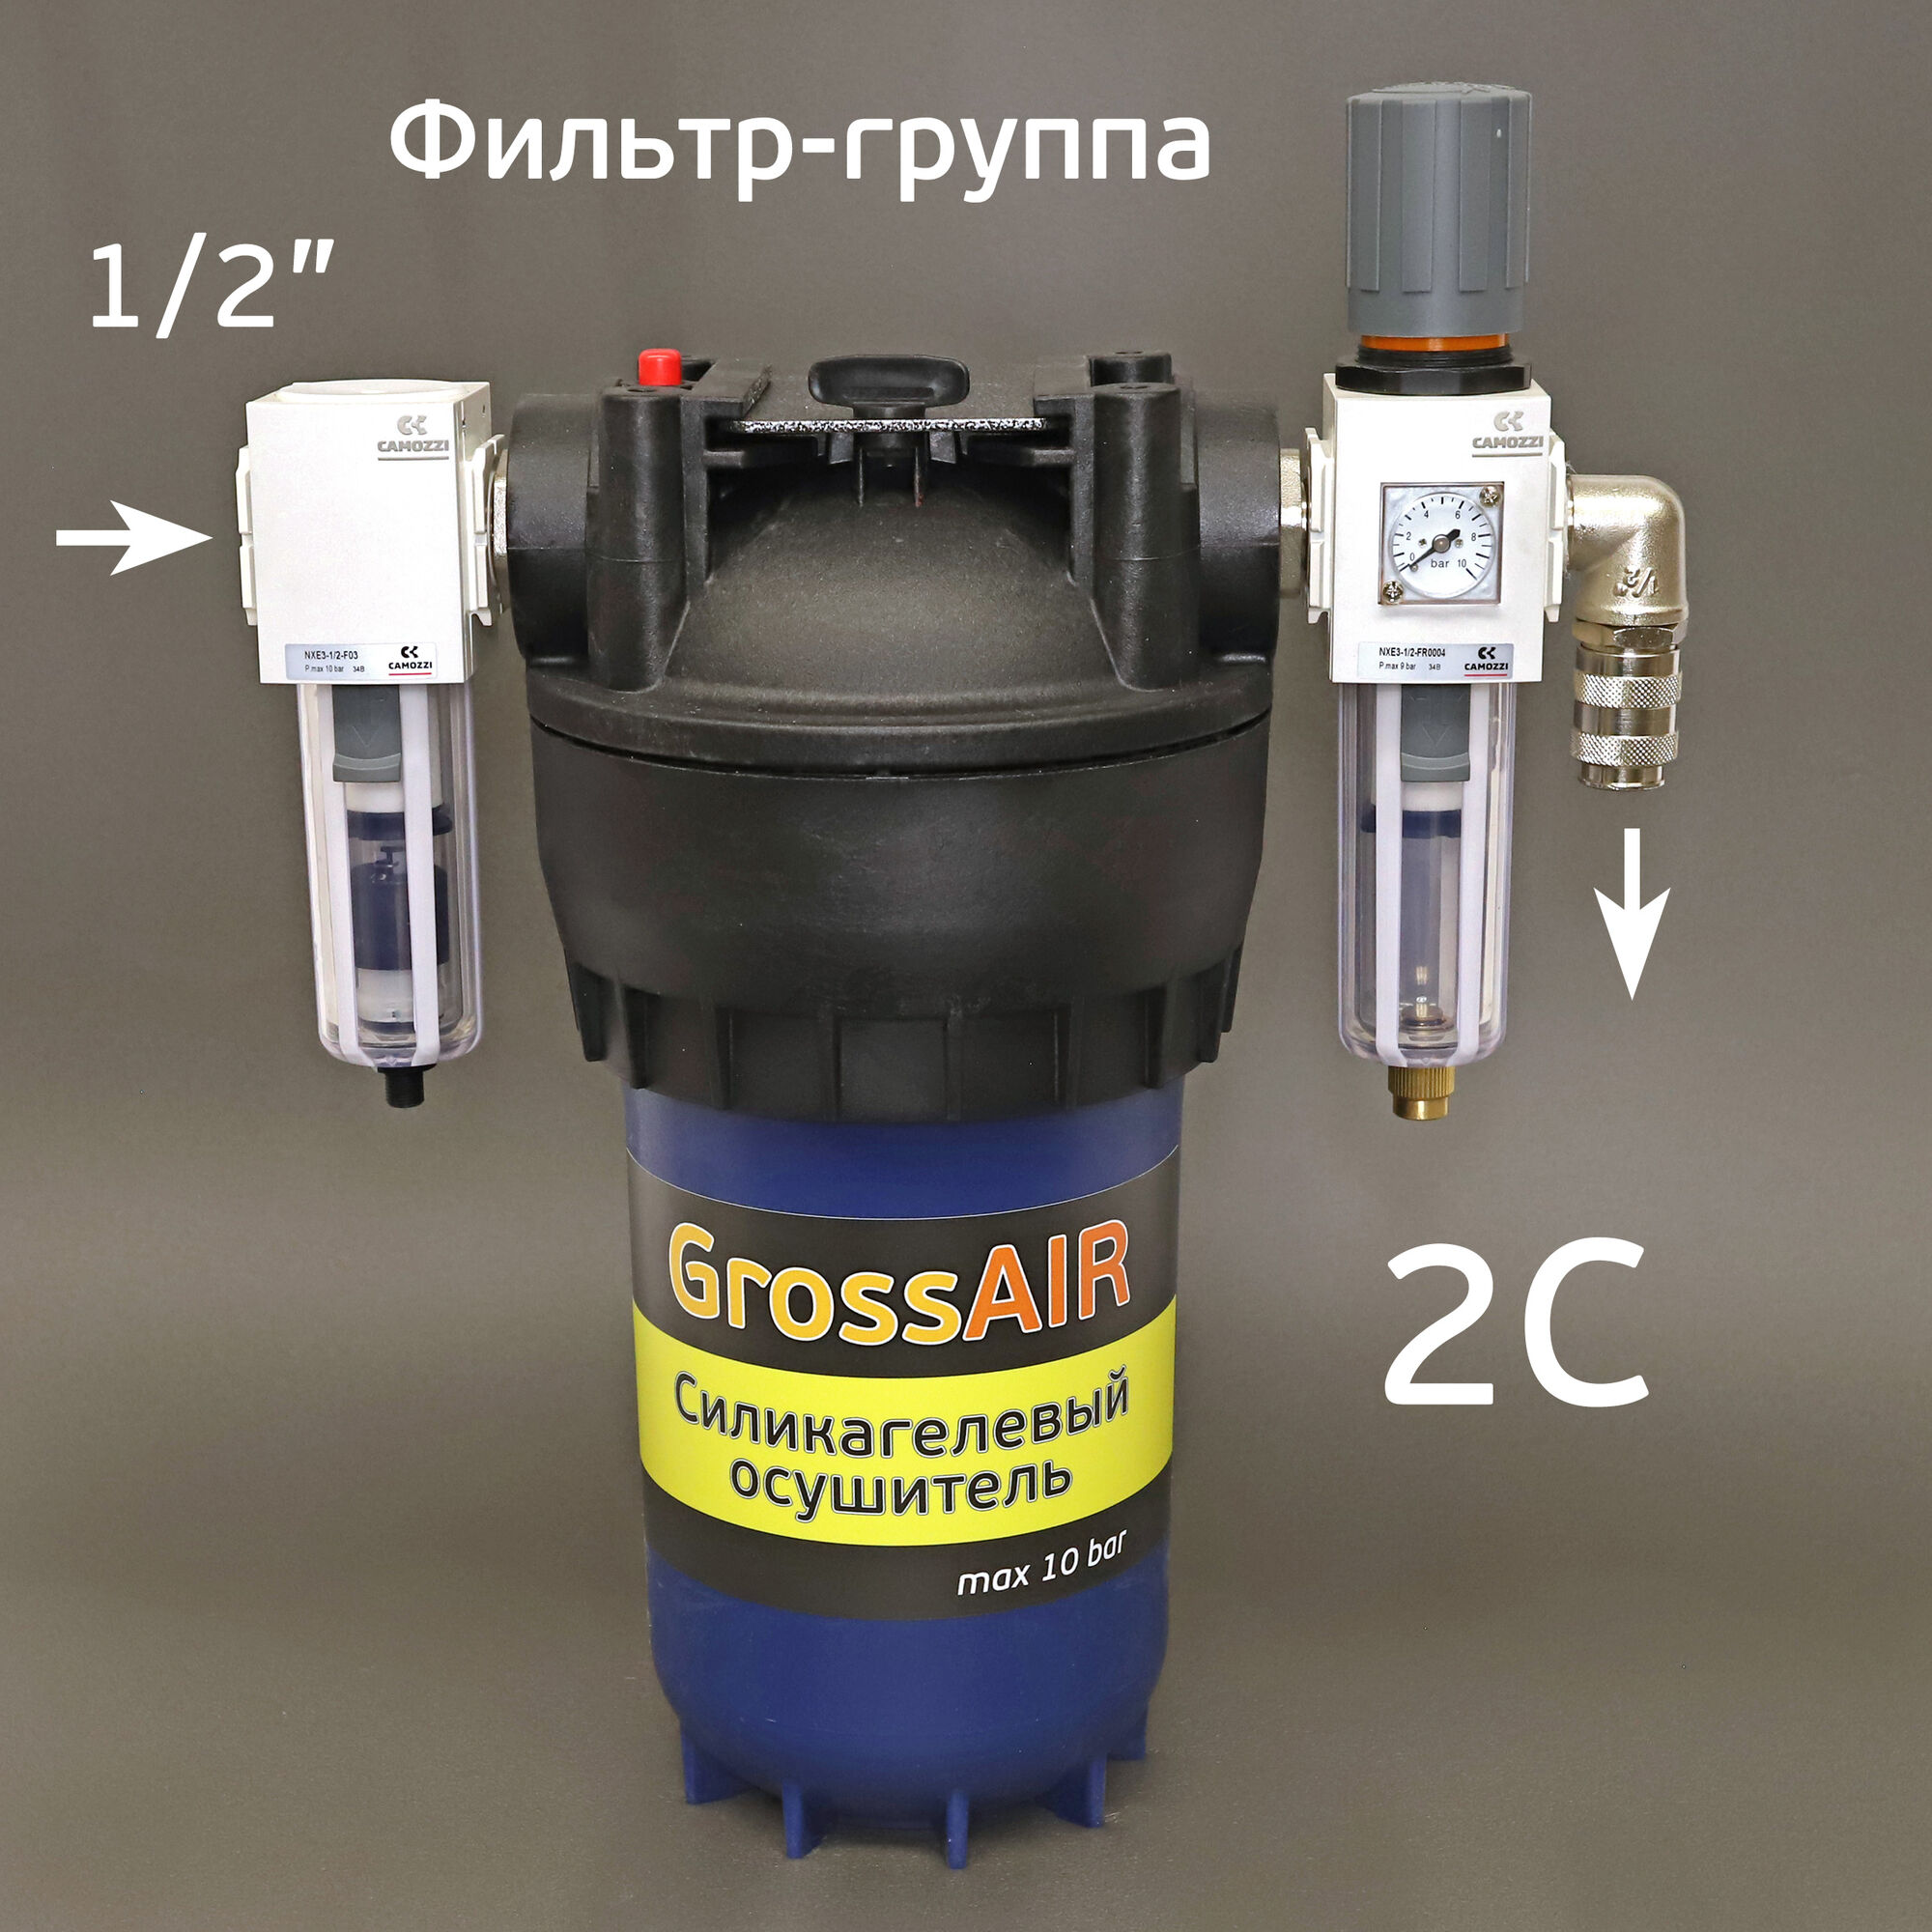 Фильтр-группа GrossAIR 2C для очистки сжатого воздуха Camozzi 1/2"